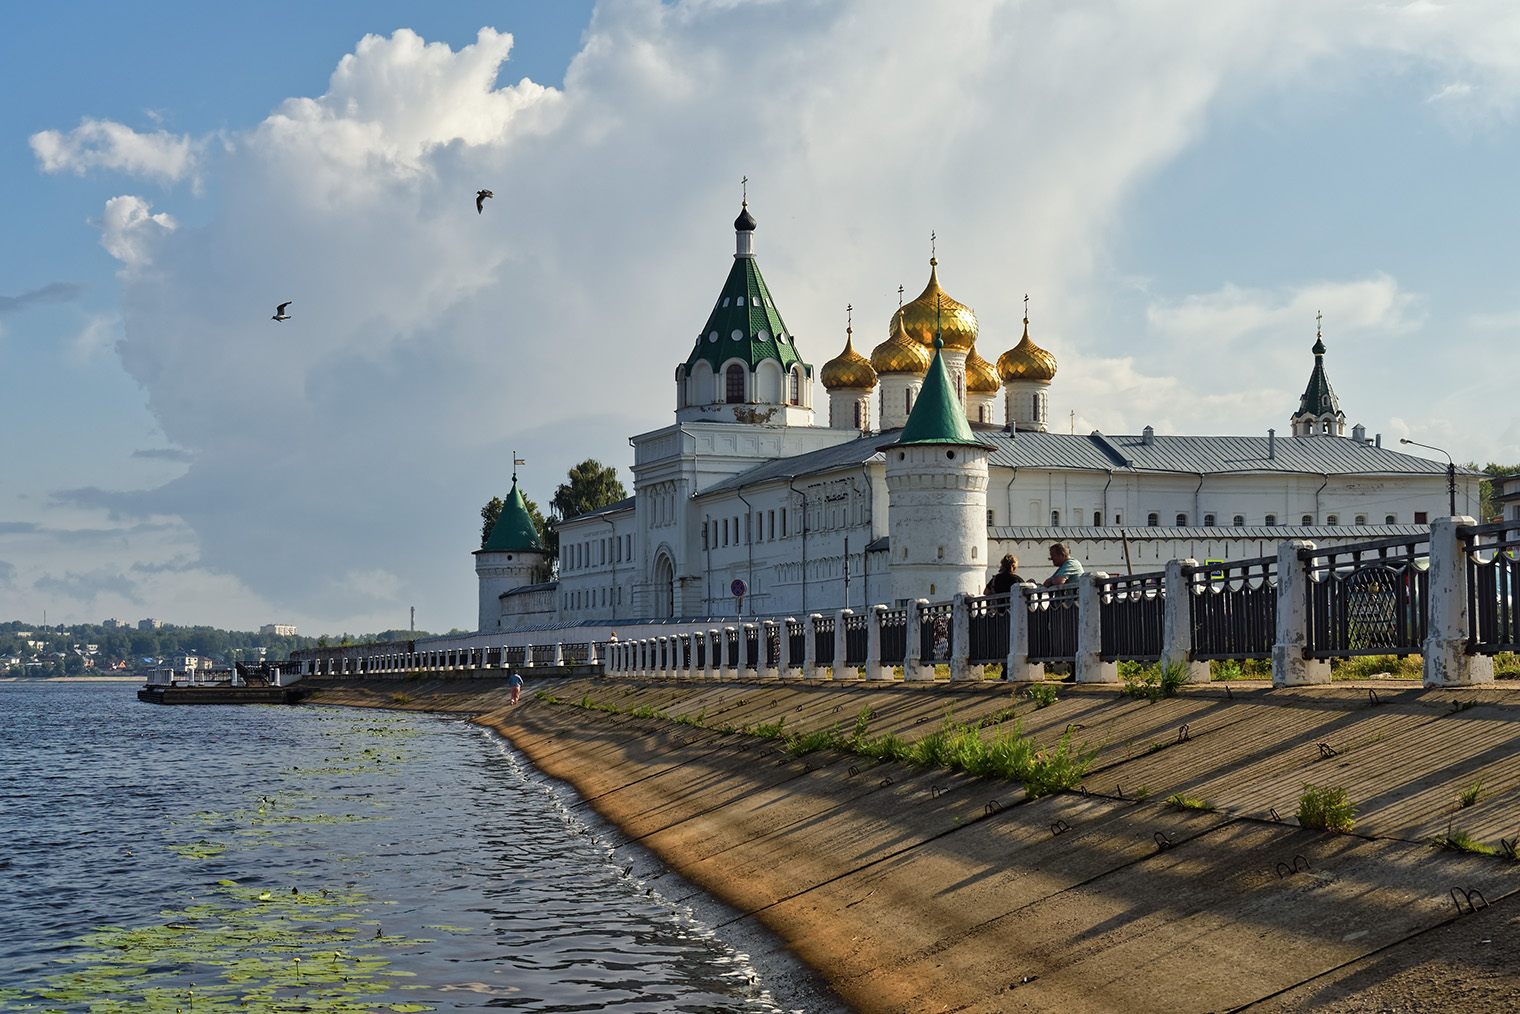 Ипатьевский монастырь. Фотография: Alexxx1979 / Wikipedia